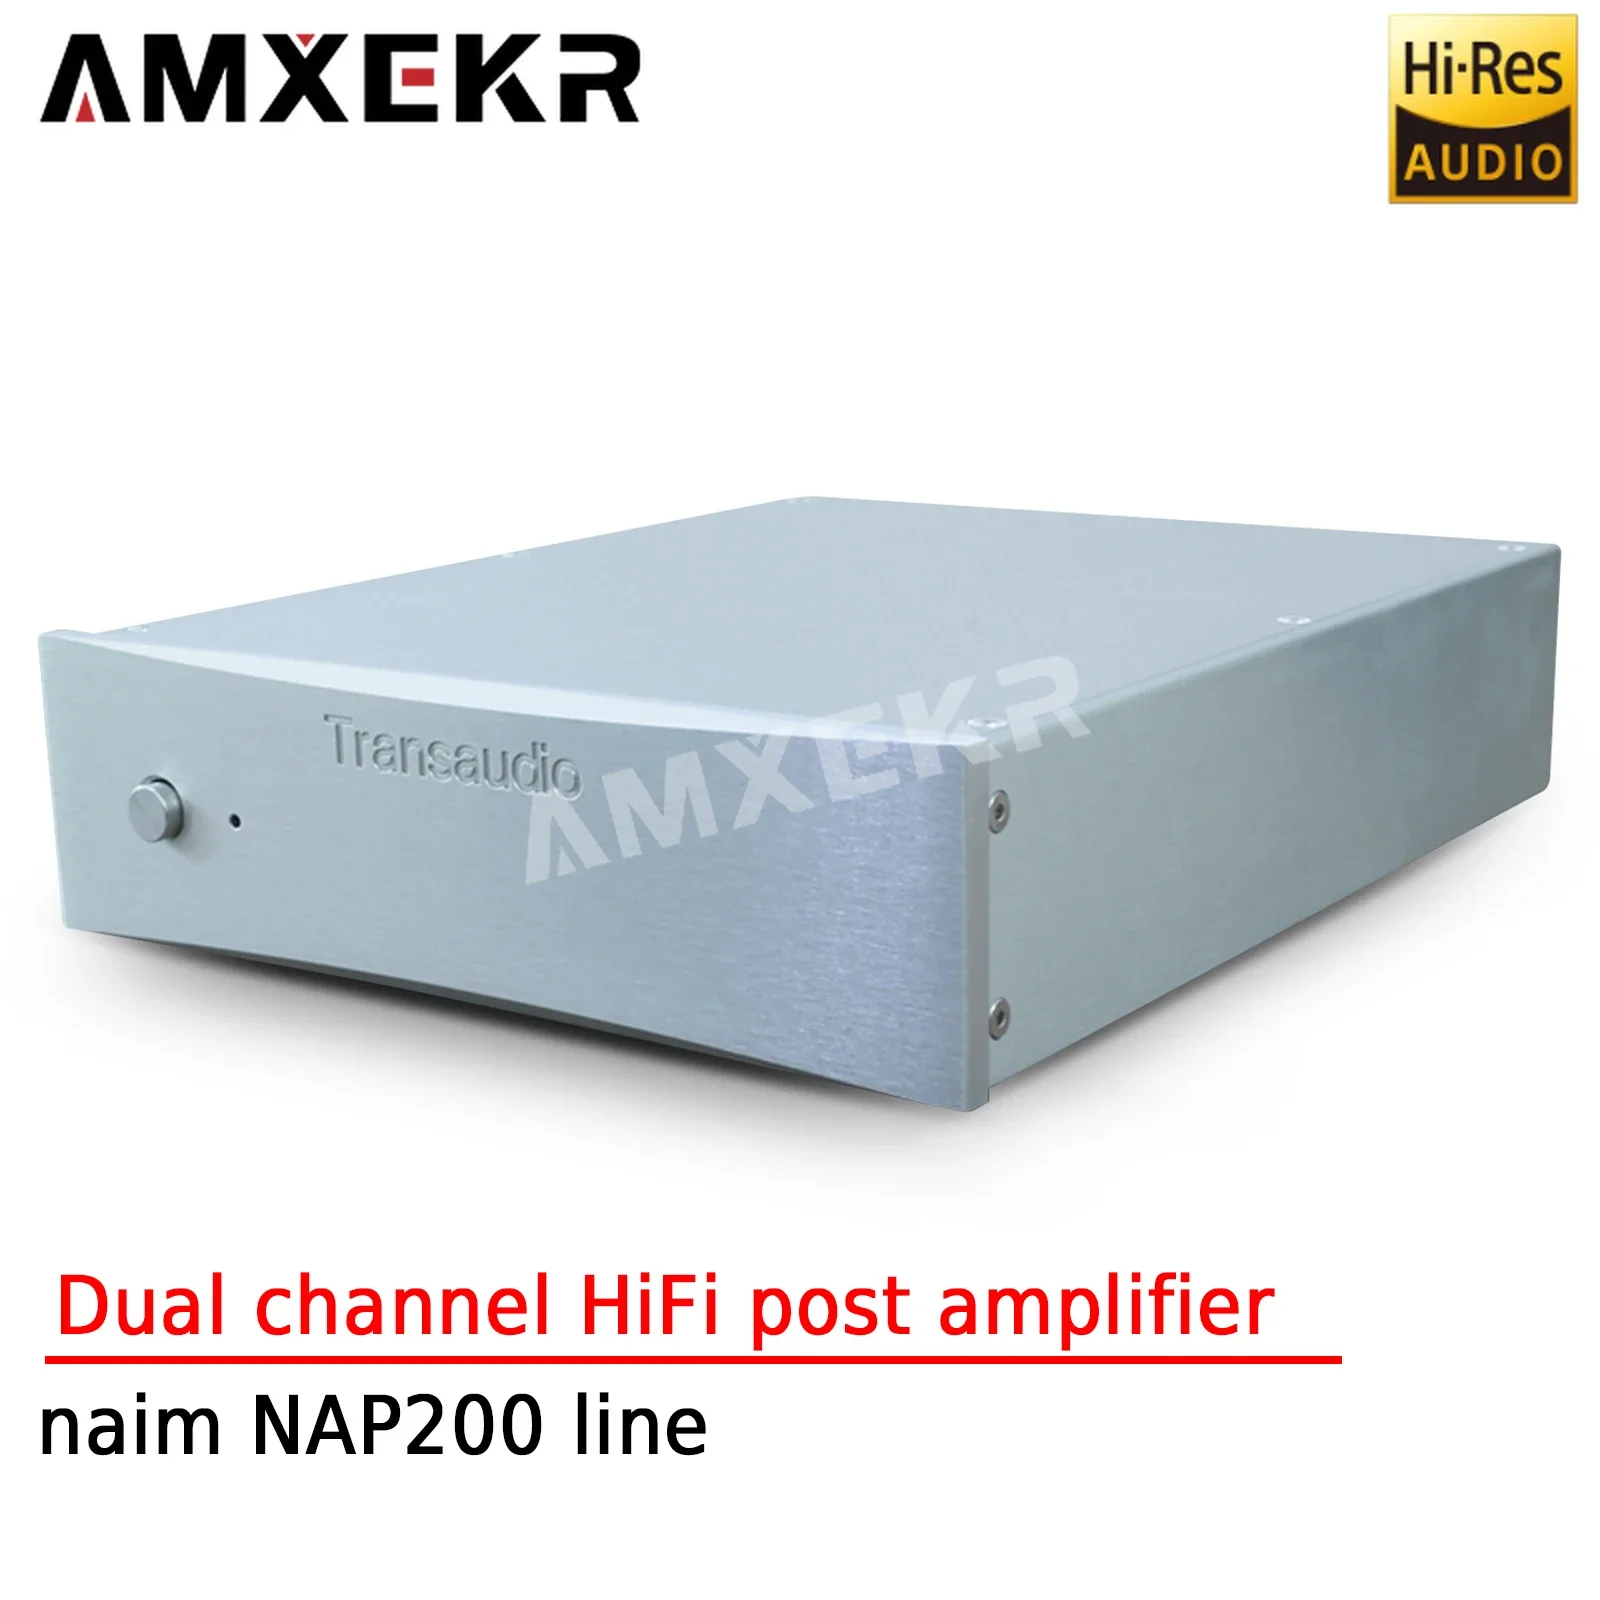 

Двухканальный усилитель мощности AMXEKR HiFi постступенчатый 2 этапа Naim NAP200 линейный домашний кинотеатр